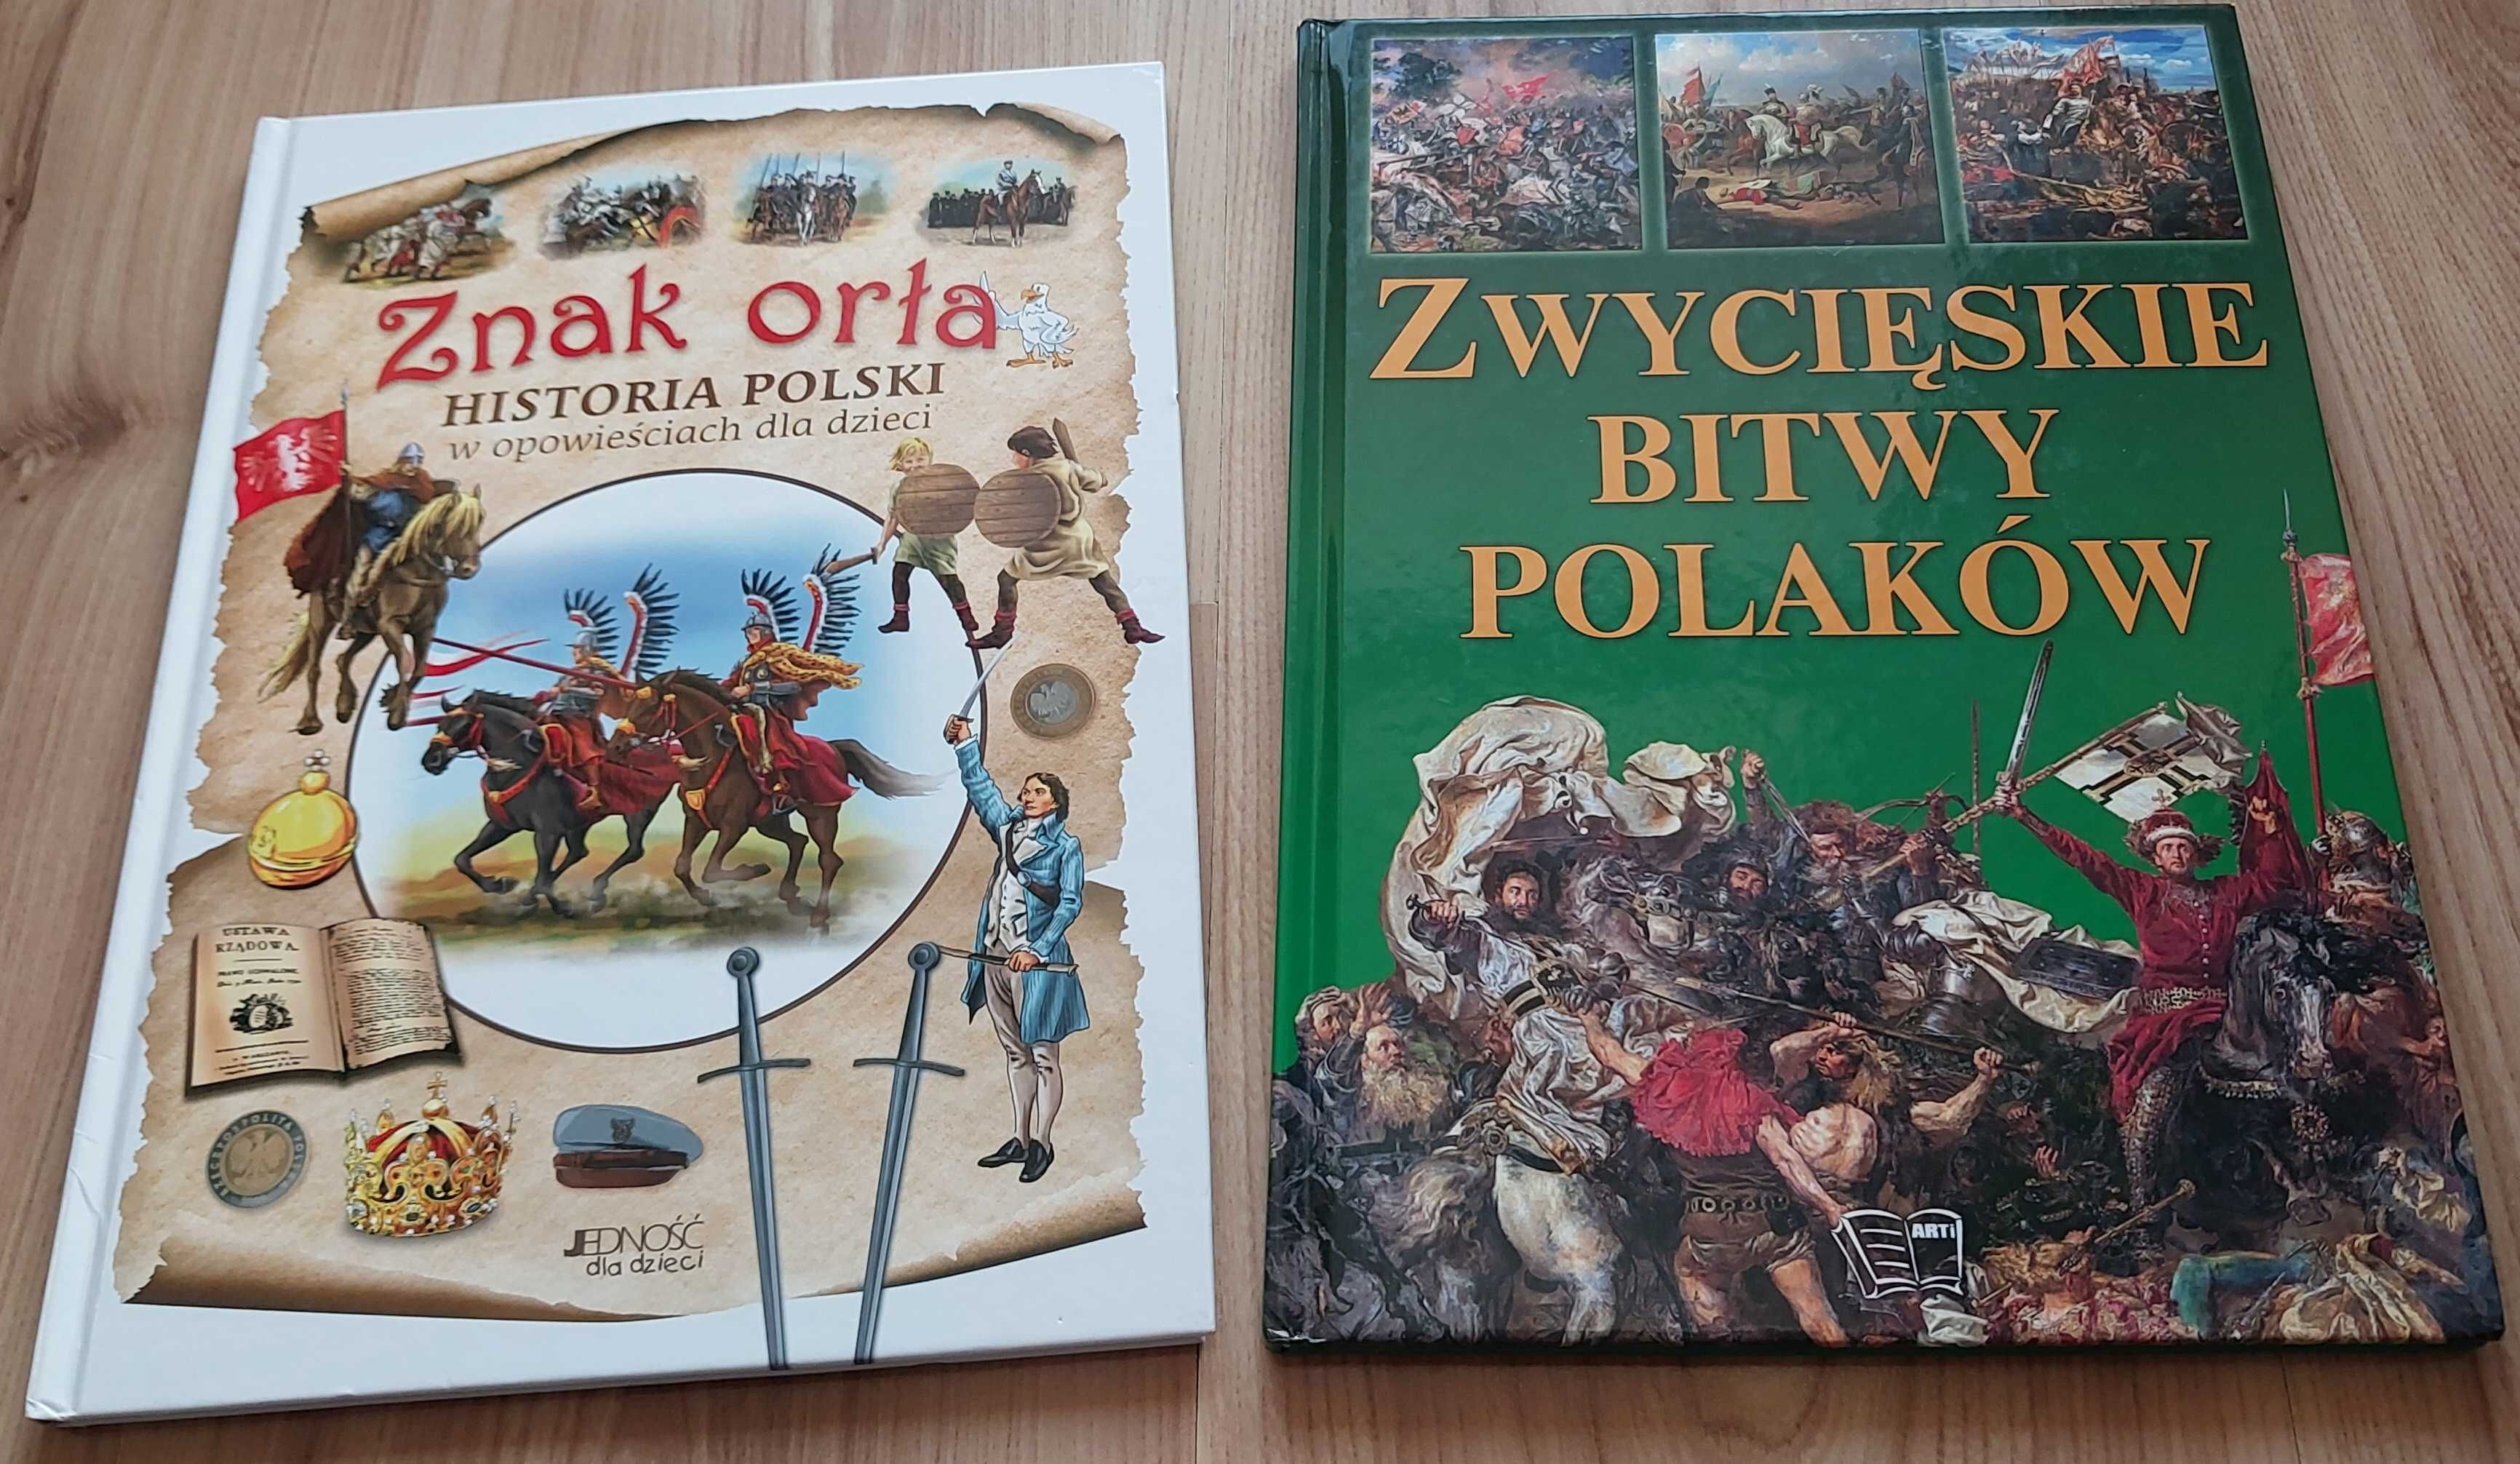 Zwycięskie bitwy Polaków, Znak orła - historia Polski dla dzieci